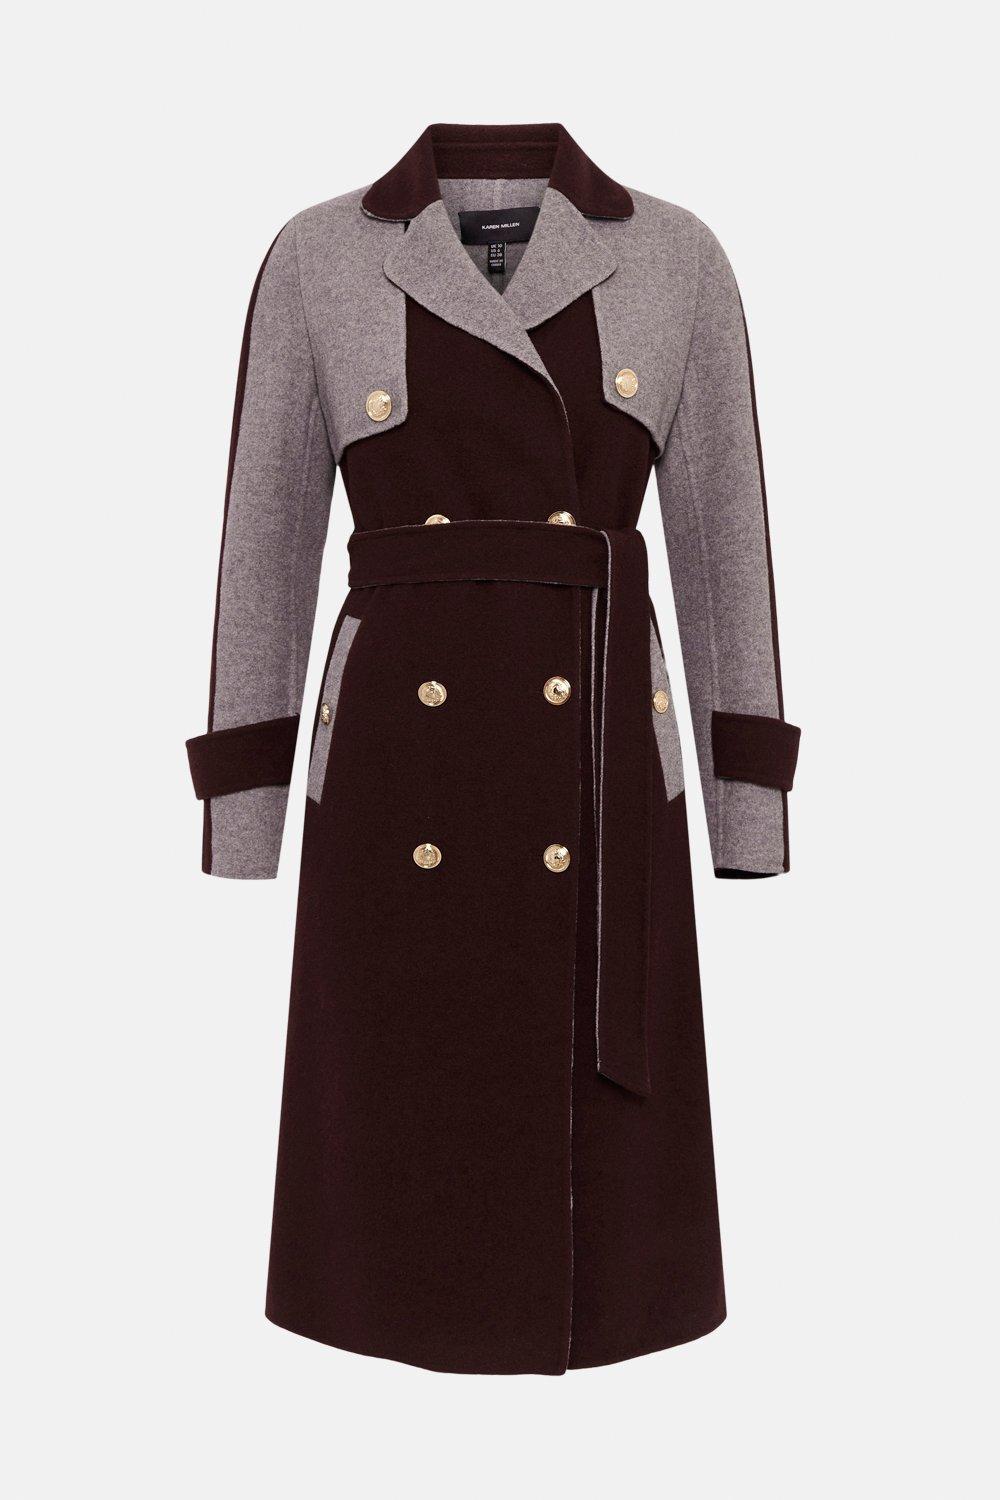 Karen Millen Colourblock Splitable Wool Coat